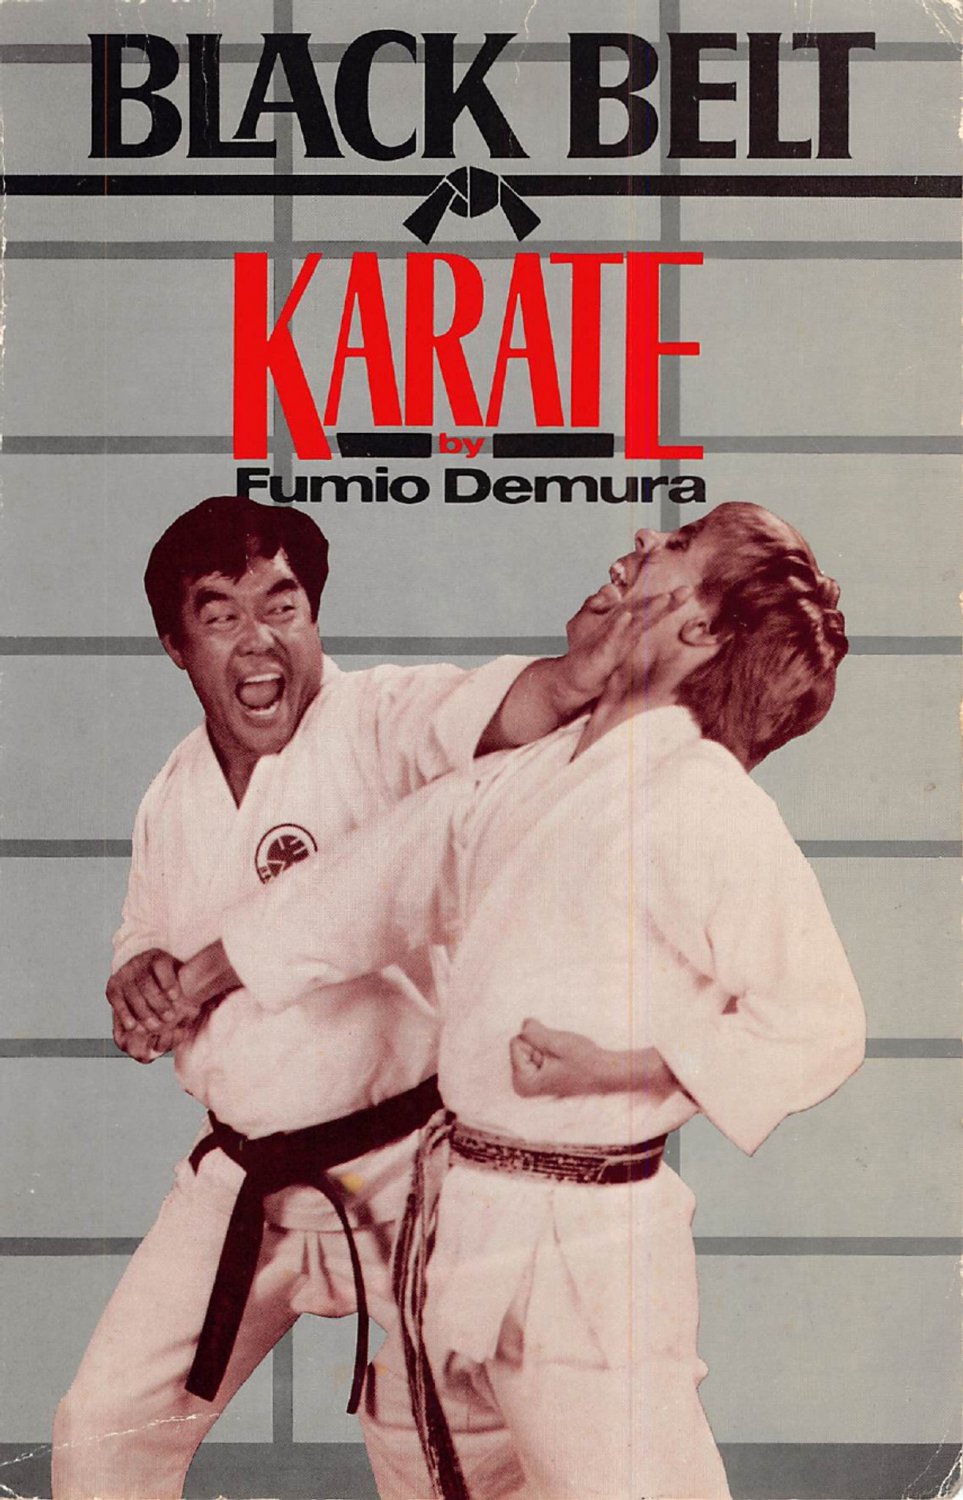 BR5050A-BD DIGITAL E-BOOK Black Belt Karate by Fumio Demura